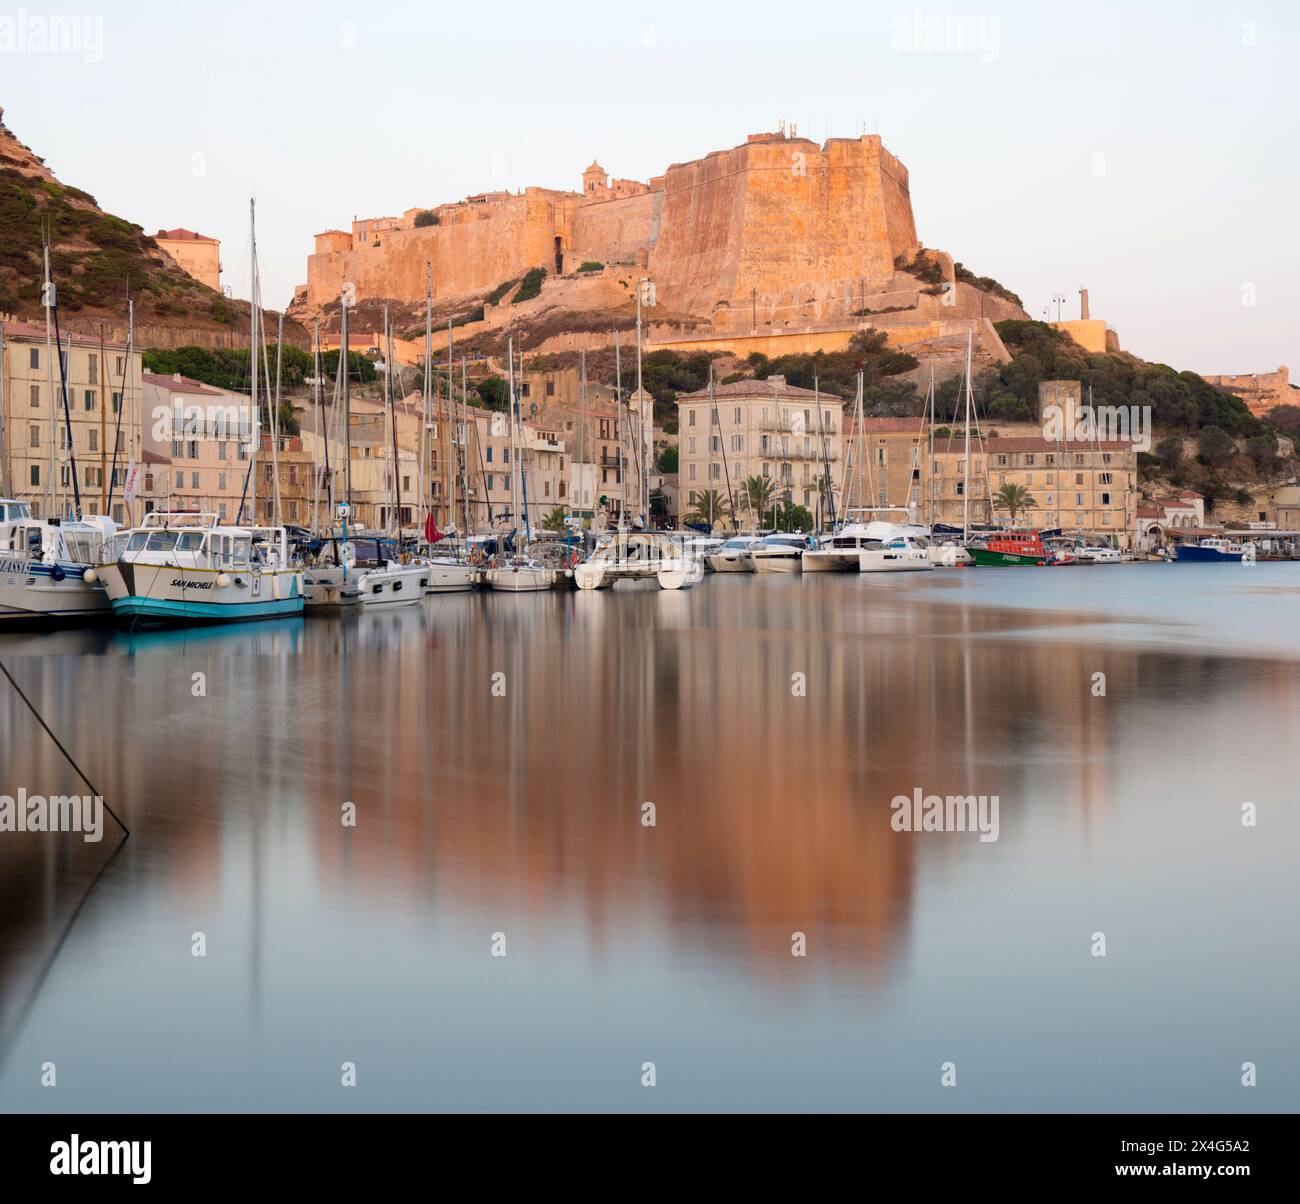 Bonifacio, Corse-du-Sud, Korsika, Frankreich. Blick über den Hafen auf die Zitadelle, die Morgendämmerung, die Bastion de l'Etendard spiegelt sich im ruhigen Wasser. Stockfoto